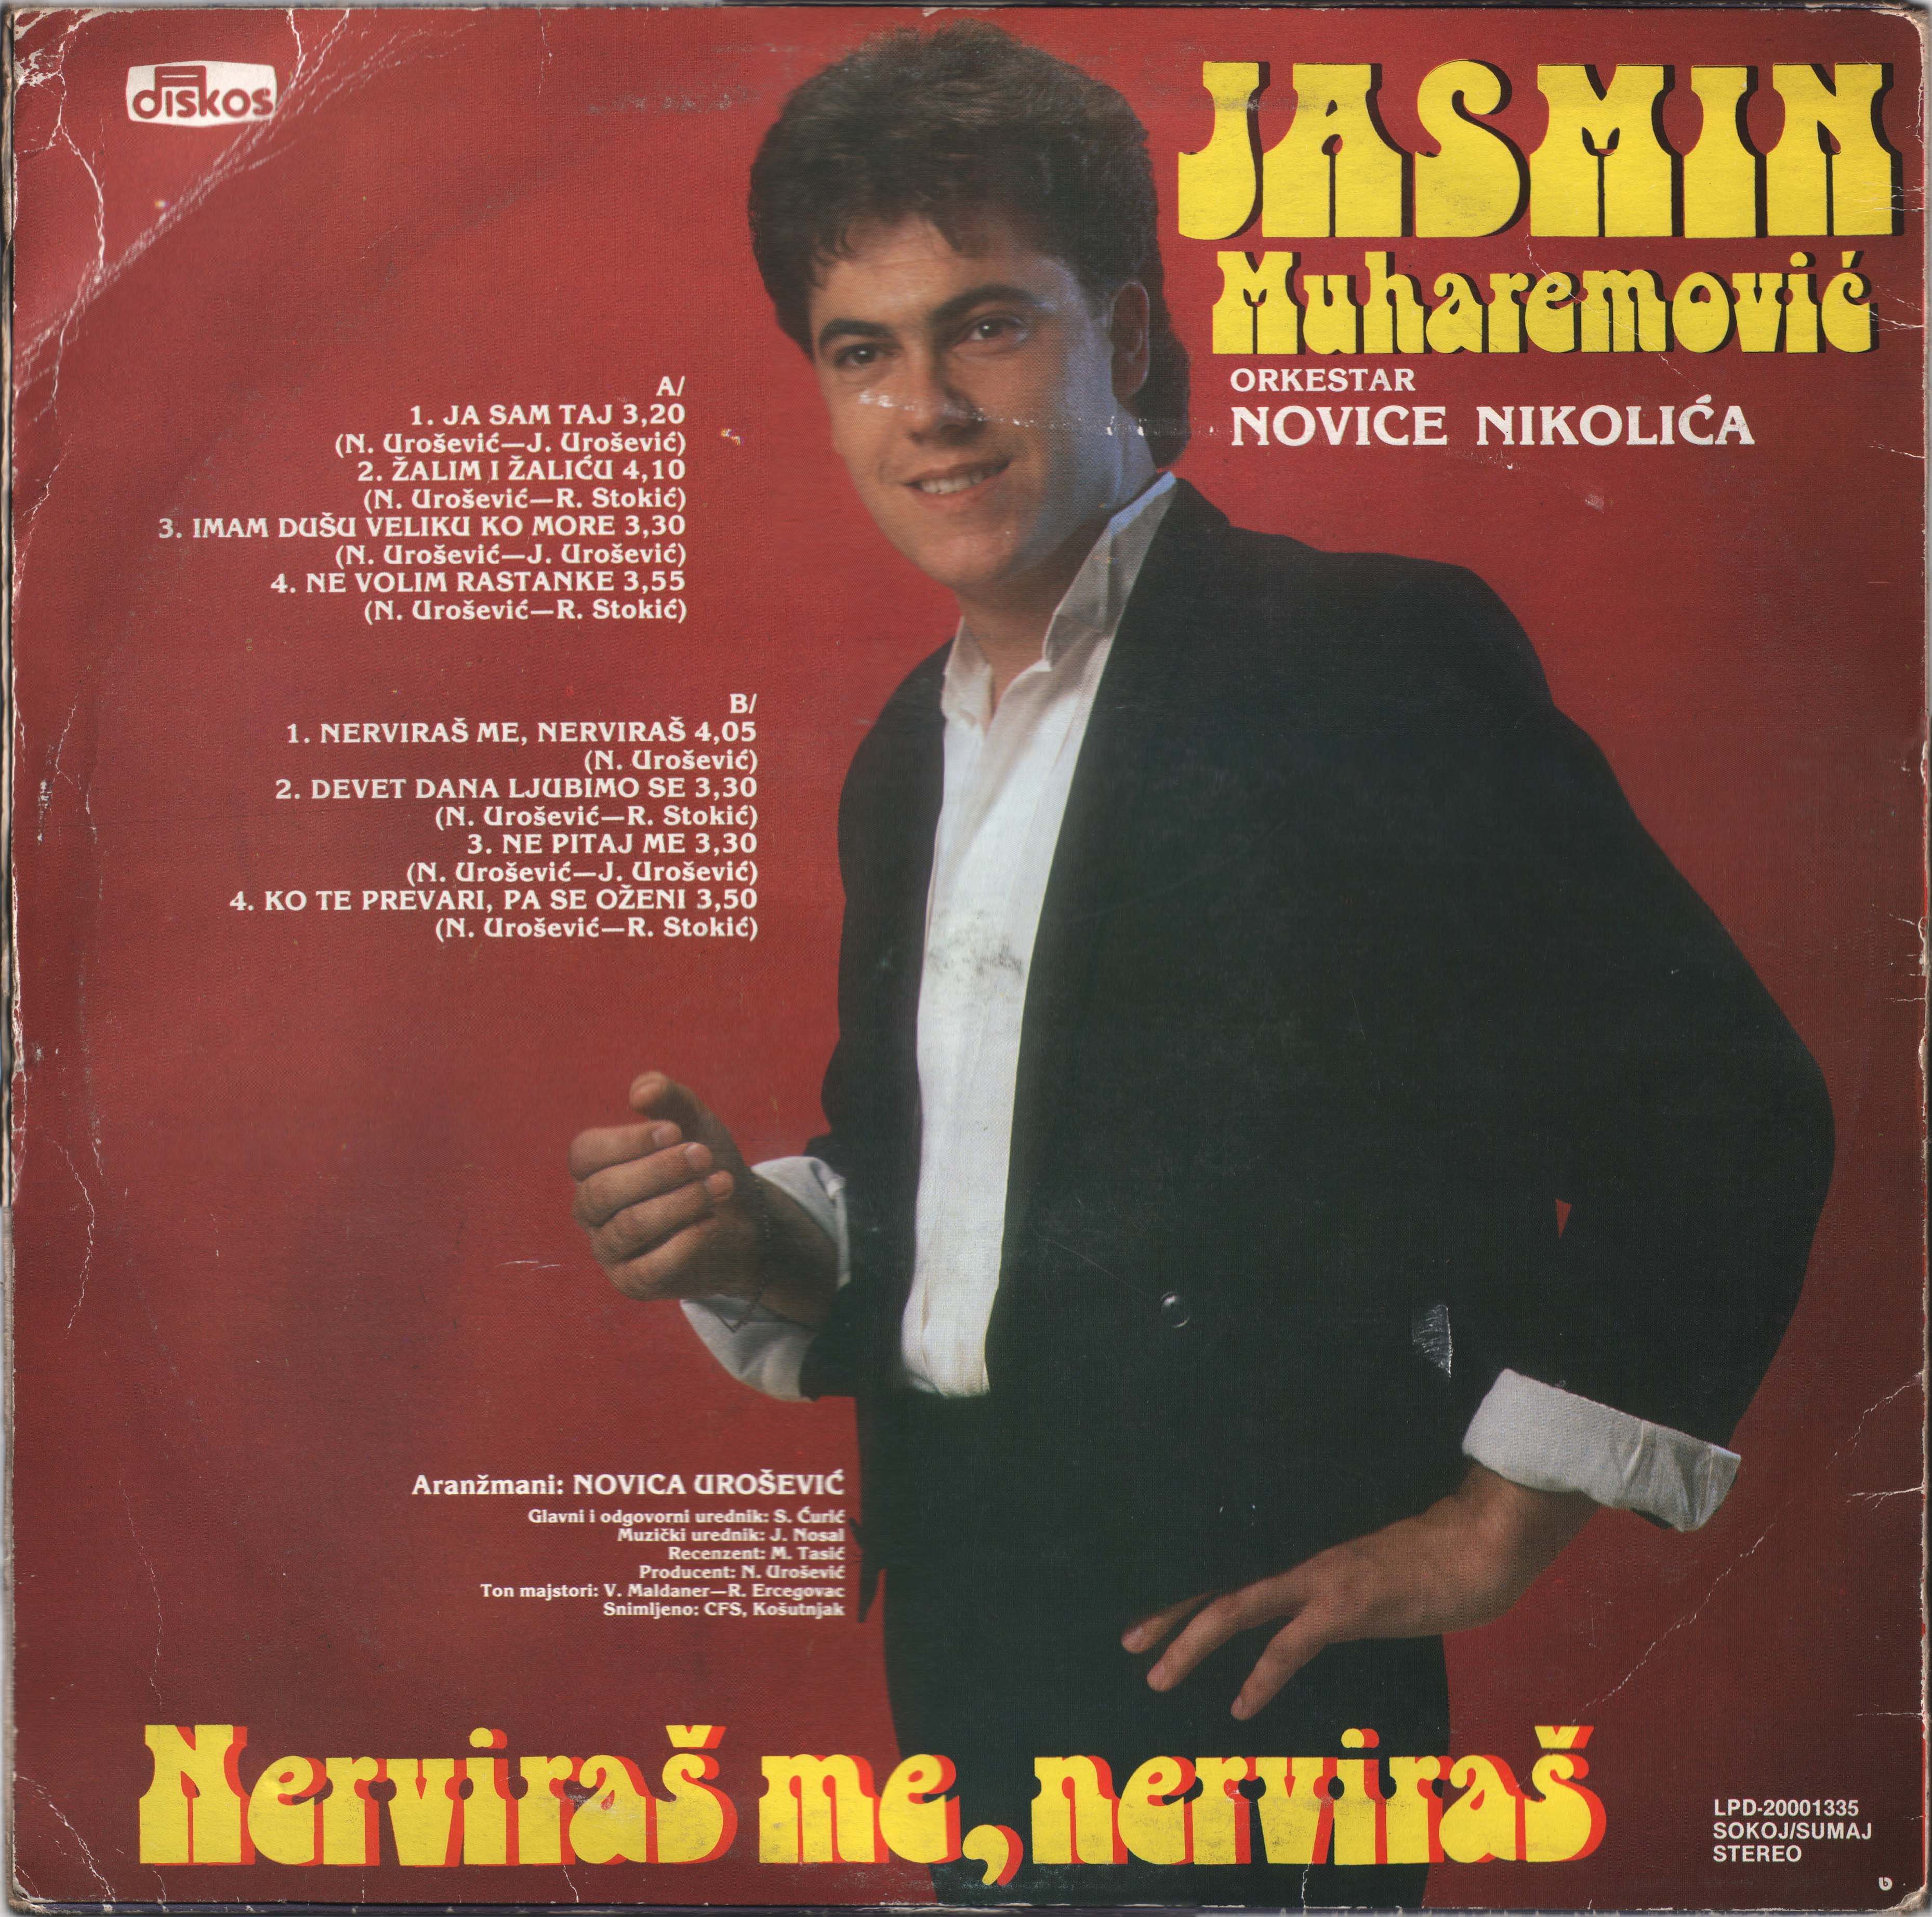 Jasmin Muharemovic 1987 Z 1